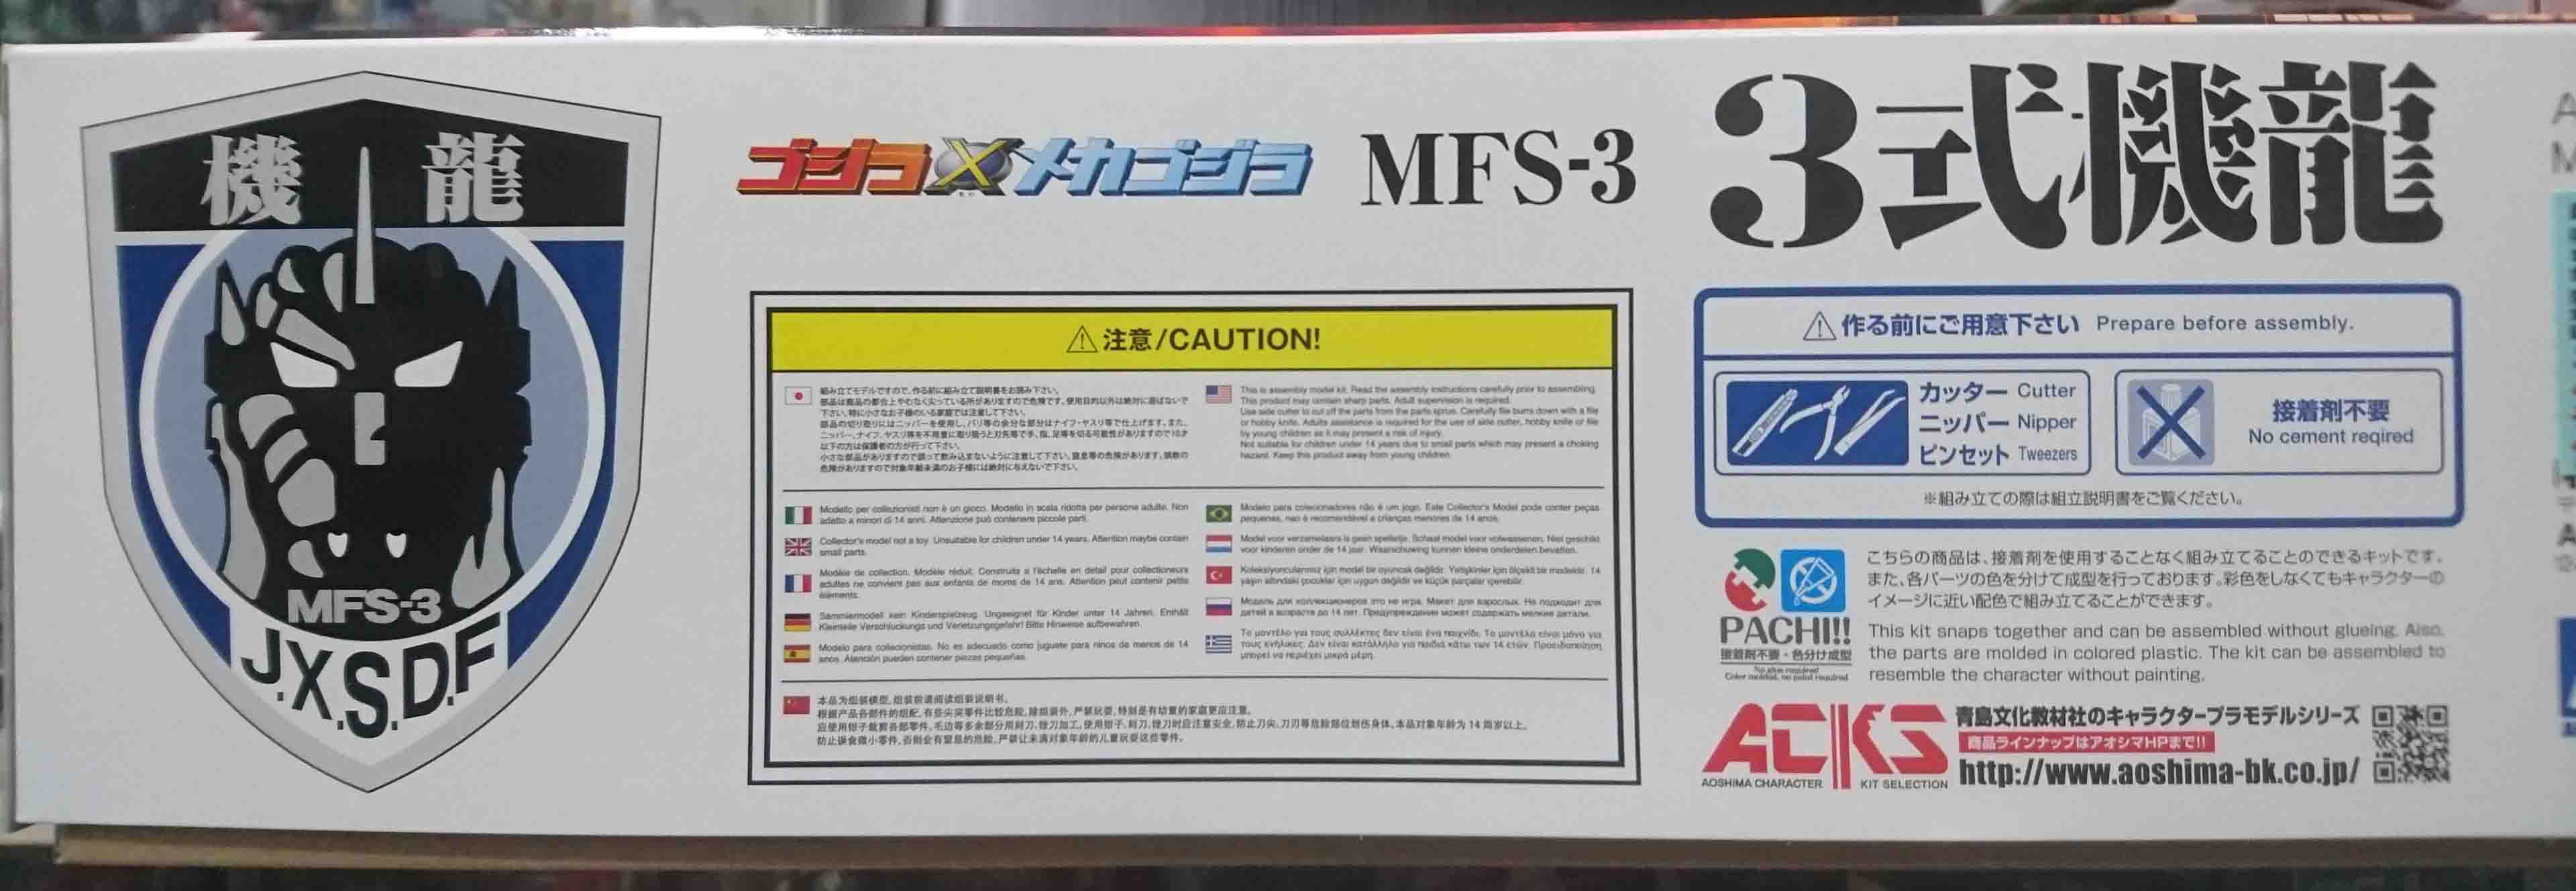 日版 青島 MFS-3 3式機龍 組裝模型，益祥模型玩具外盒實拍照片。